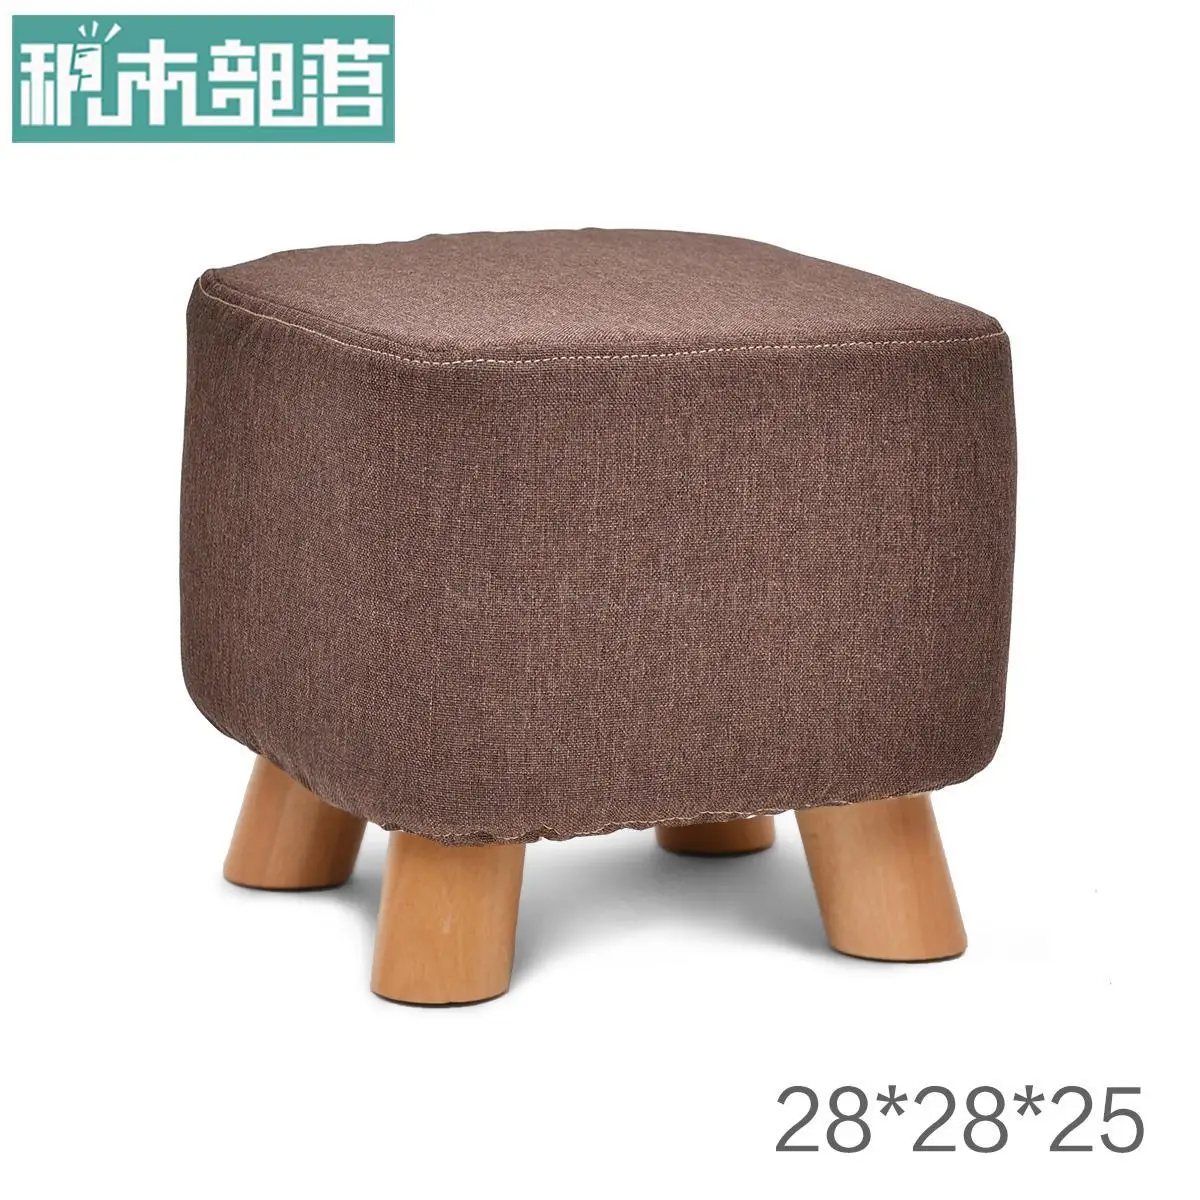 Прочная деревянная обувь скамейка модная обувь табурет креативный квадратный табурет ткань диван стул для кофе стол скамейка домашний стул - Цвет: VIP 5